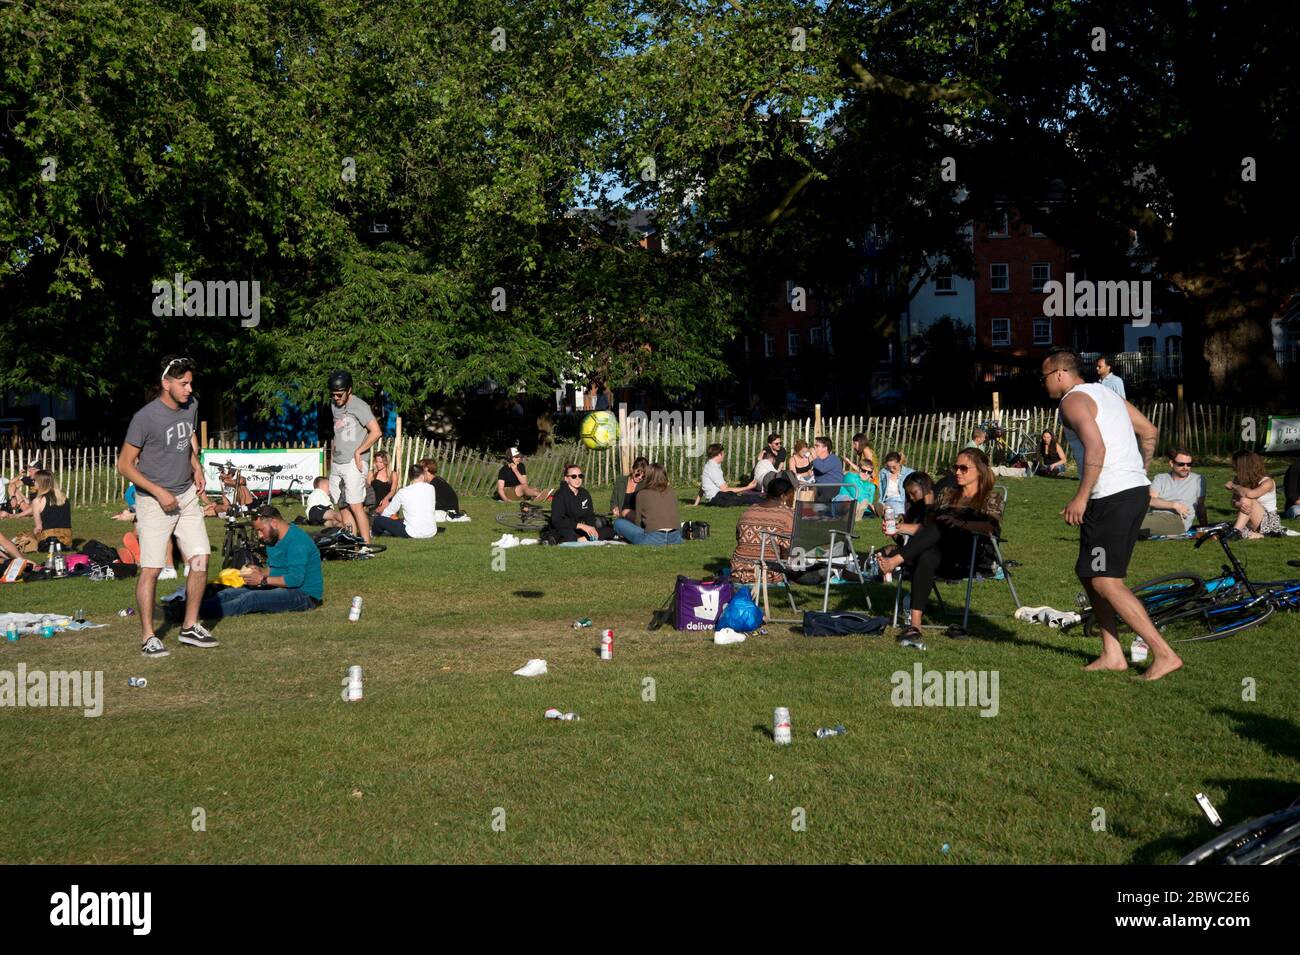 Hackney, Londra, maggio 2020 durante la pandemia di Covid-19 (Coronavirus). Campi di Londra. Un gruppo di giovani uomini gioca una partita a palla con lattine di birra come marcatori. Foto Stock